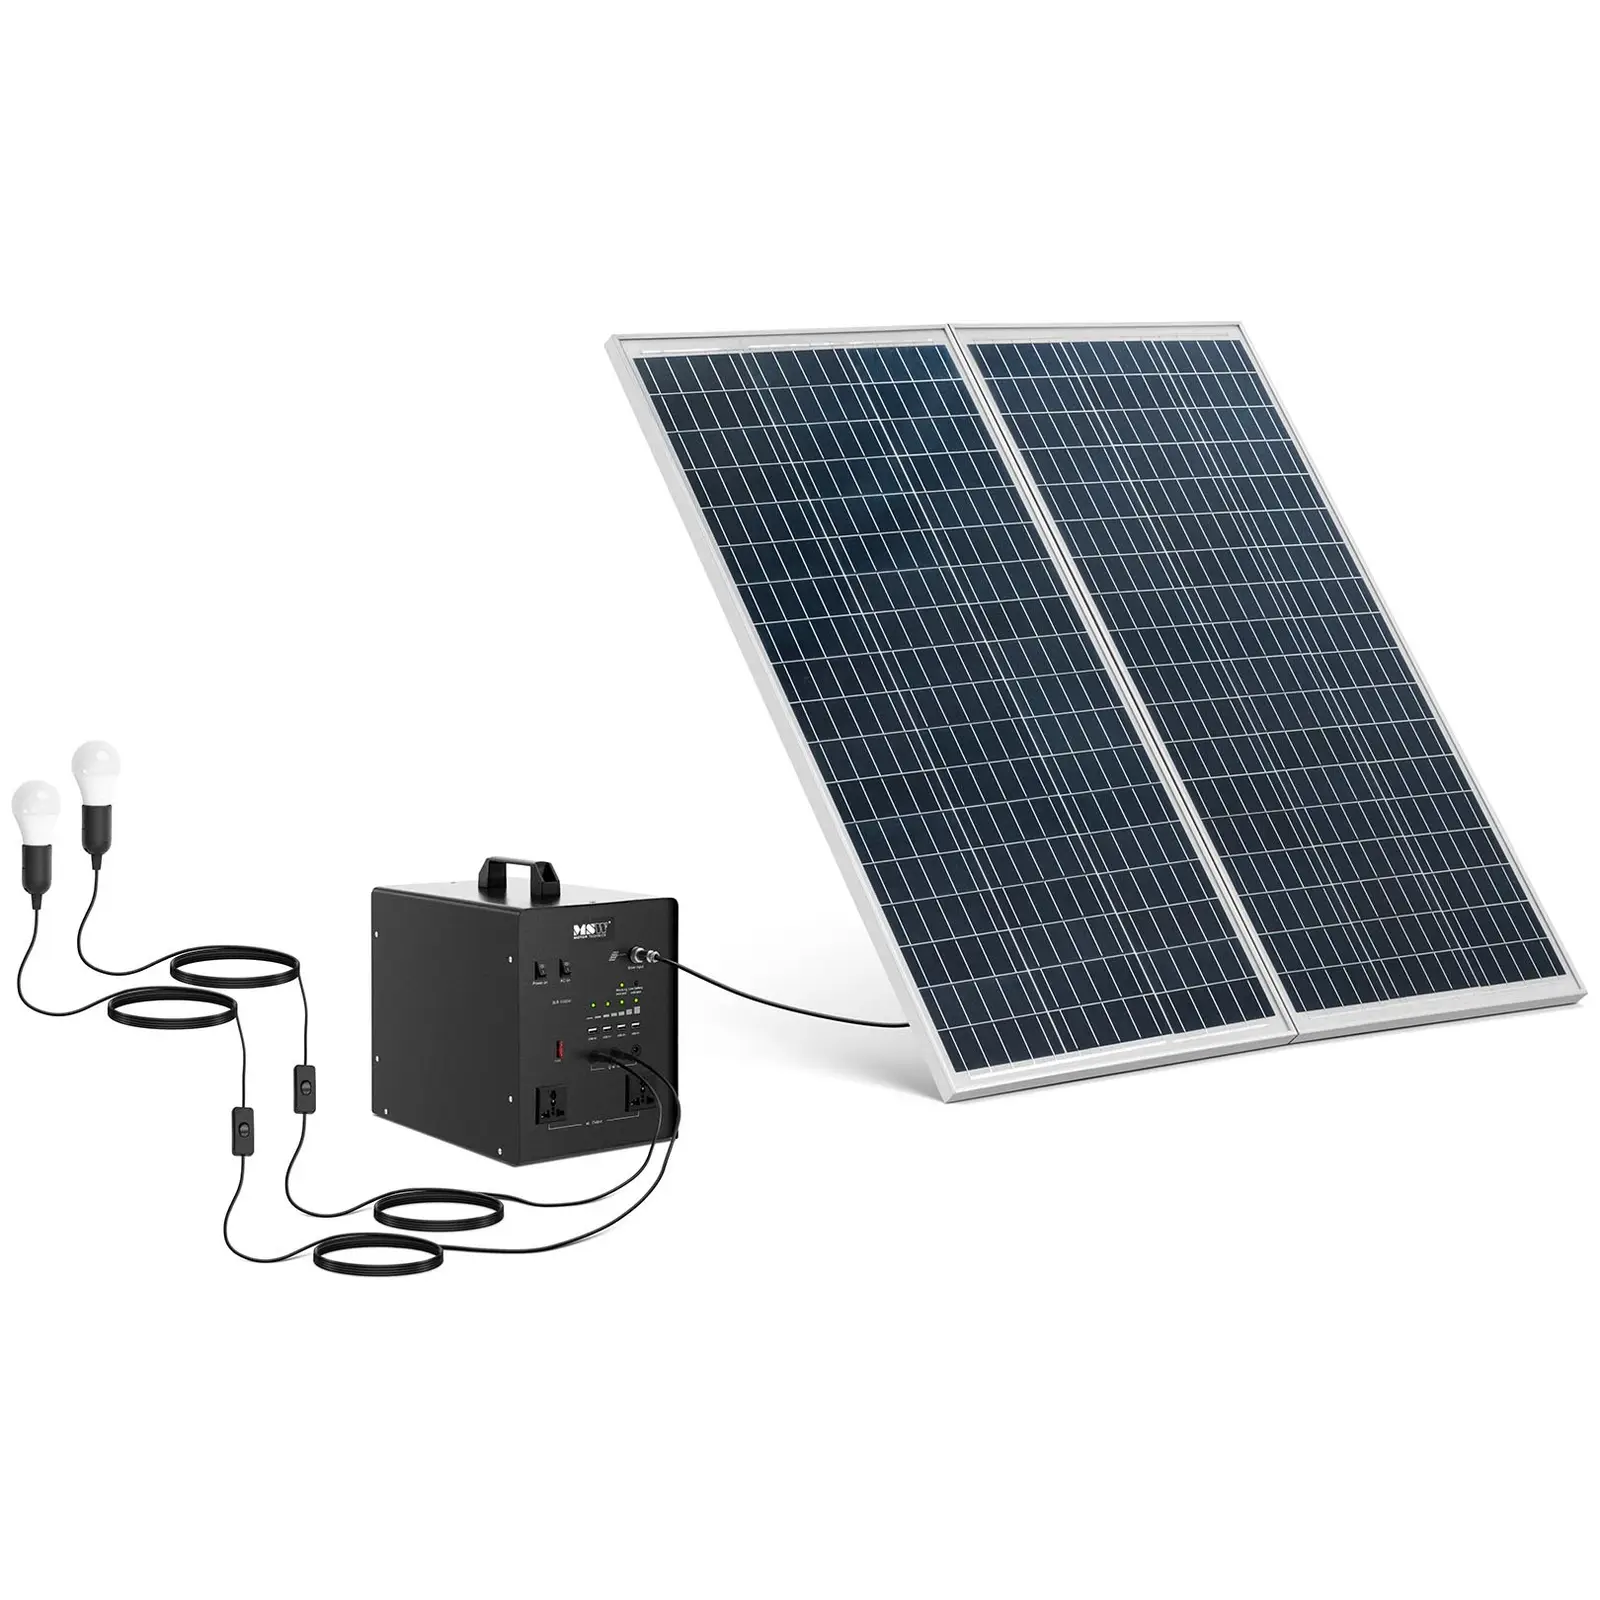 Powerstation mit Solarpanel und Wechselrichter - 1000 W - 5 / 12 /230 V - 2 LED-Leuchten